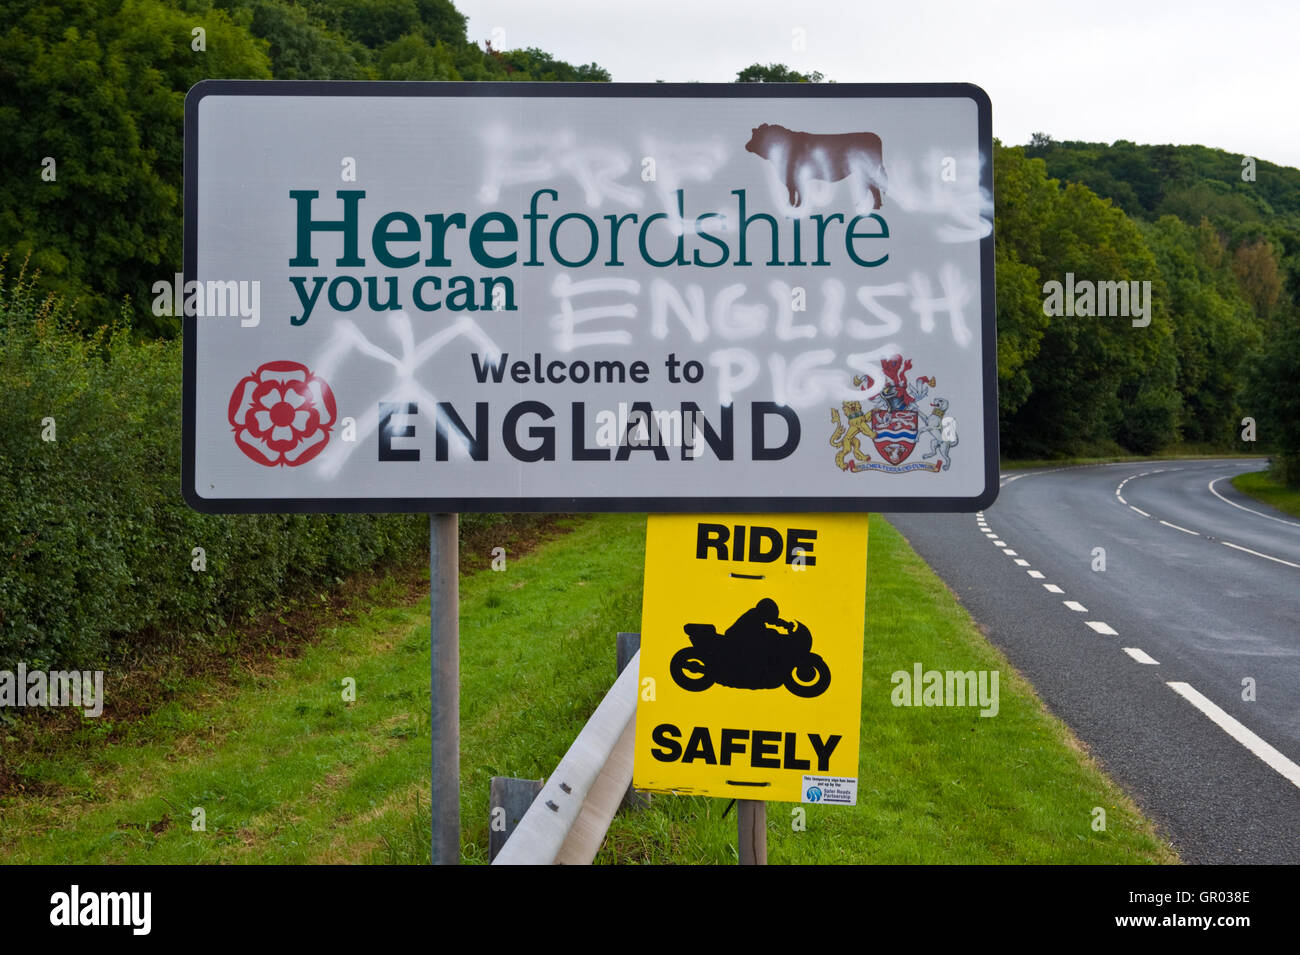 Una ola de anti-graffiti inglés ha aparecido en las señales de la carretera cerca de heno-on-Wye en la frontera de Gales de Inglaterra. Herefordshire Bienvenido a Inglaterra, Gales sin cerdos en inglés Foto de stock